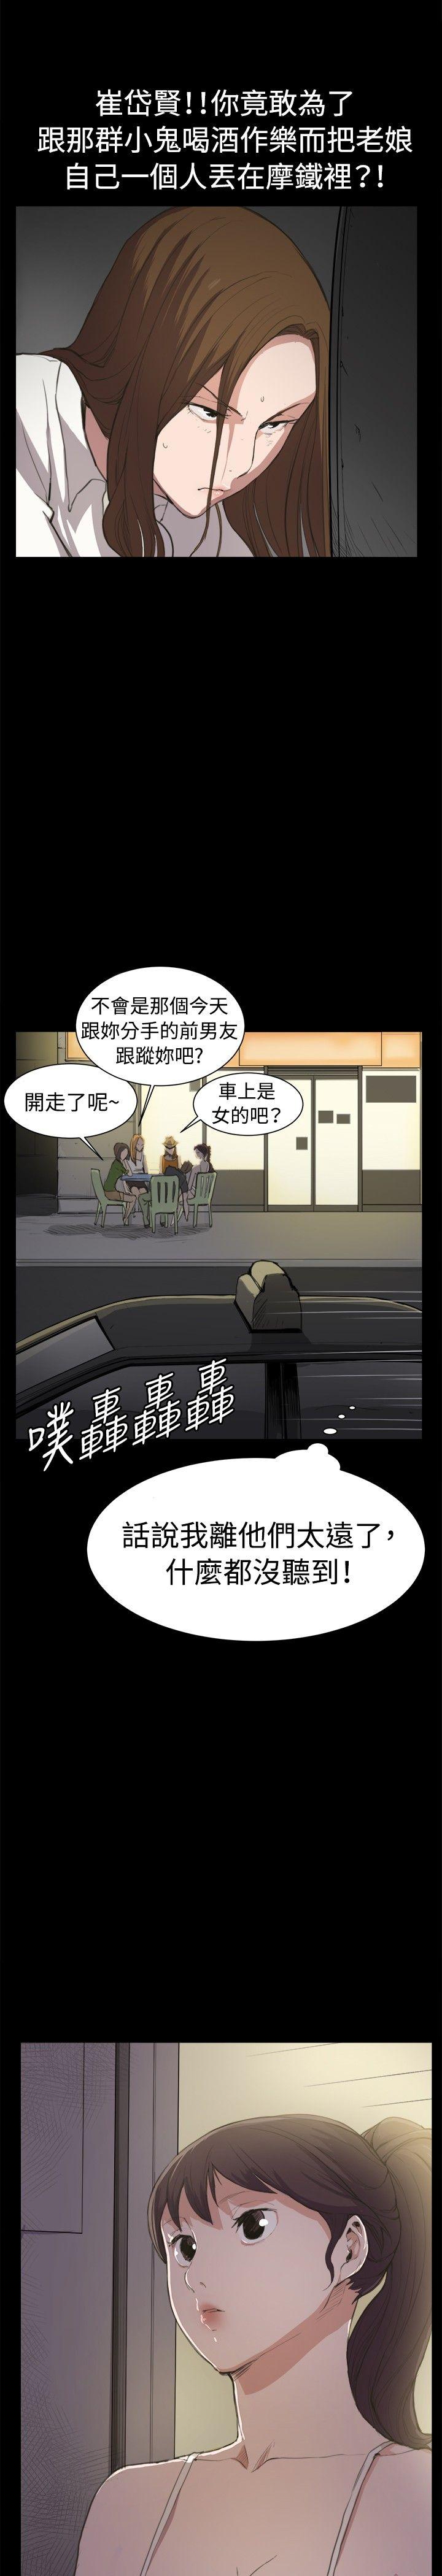 韩国污漫画 深夜便利店 第5话 20